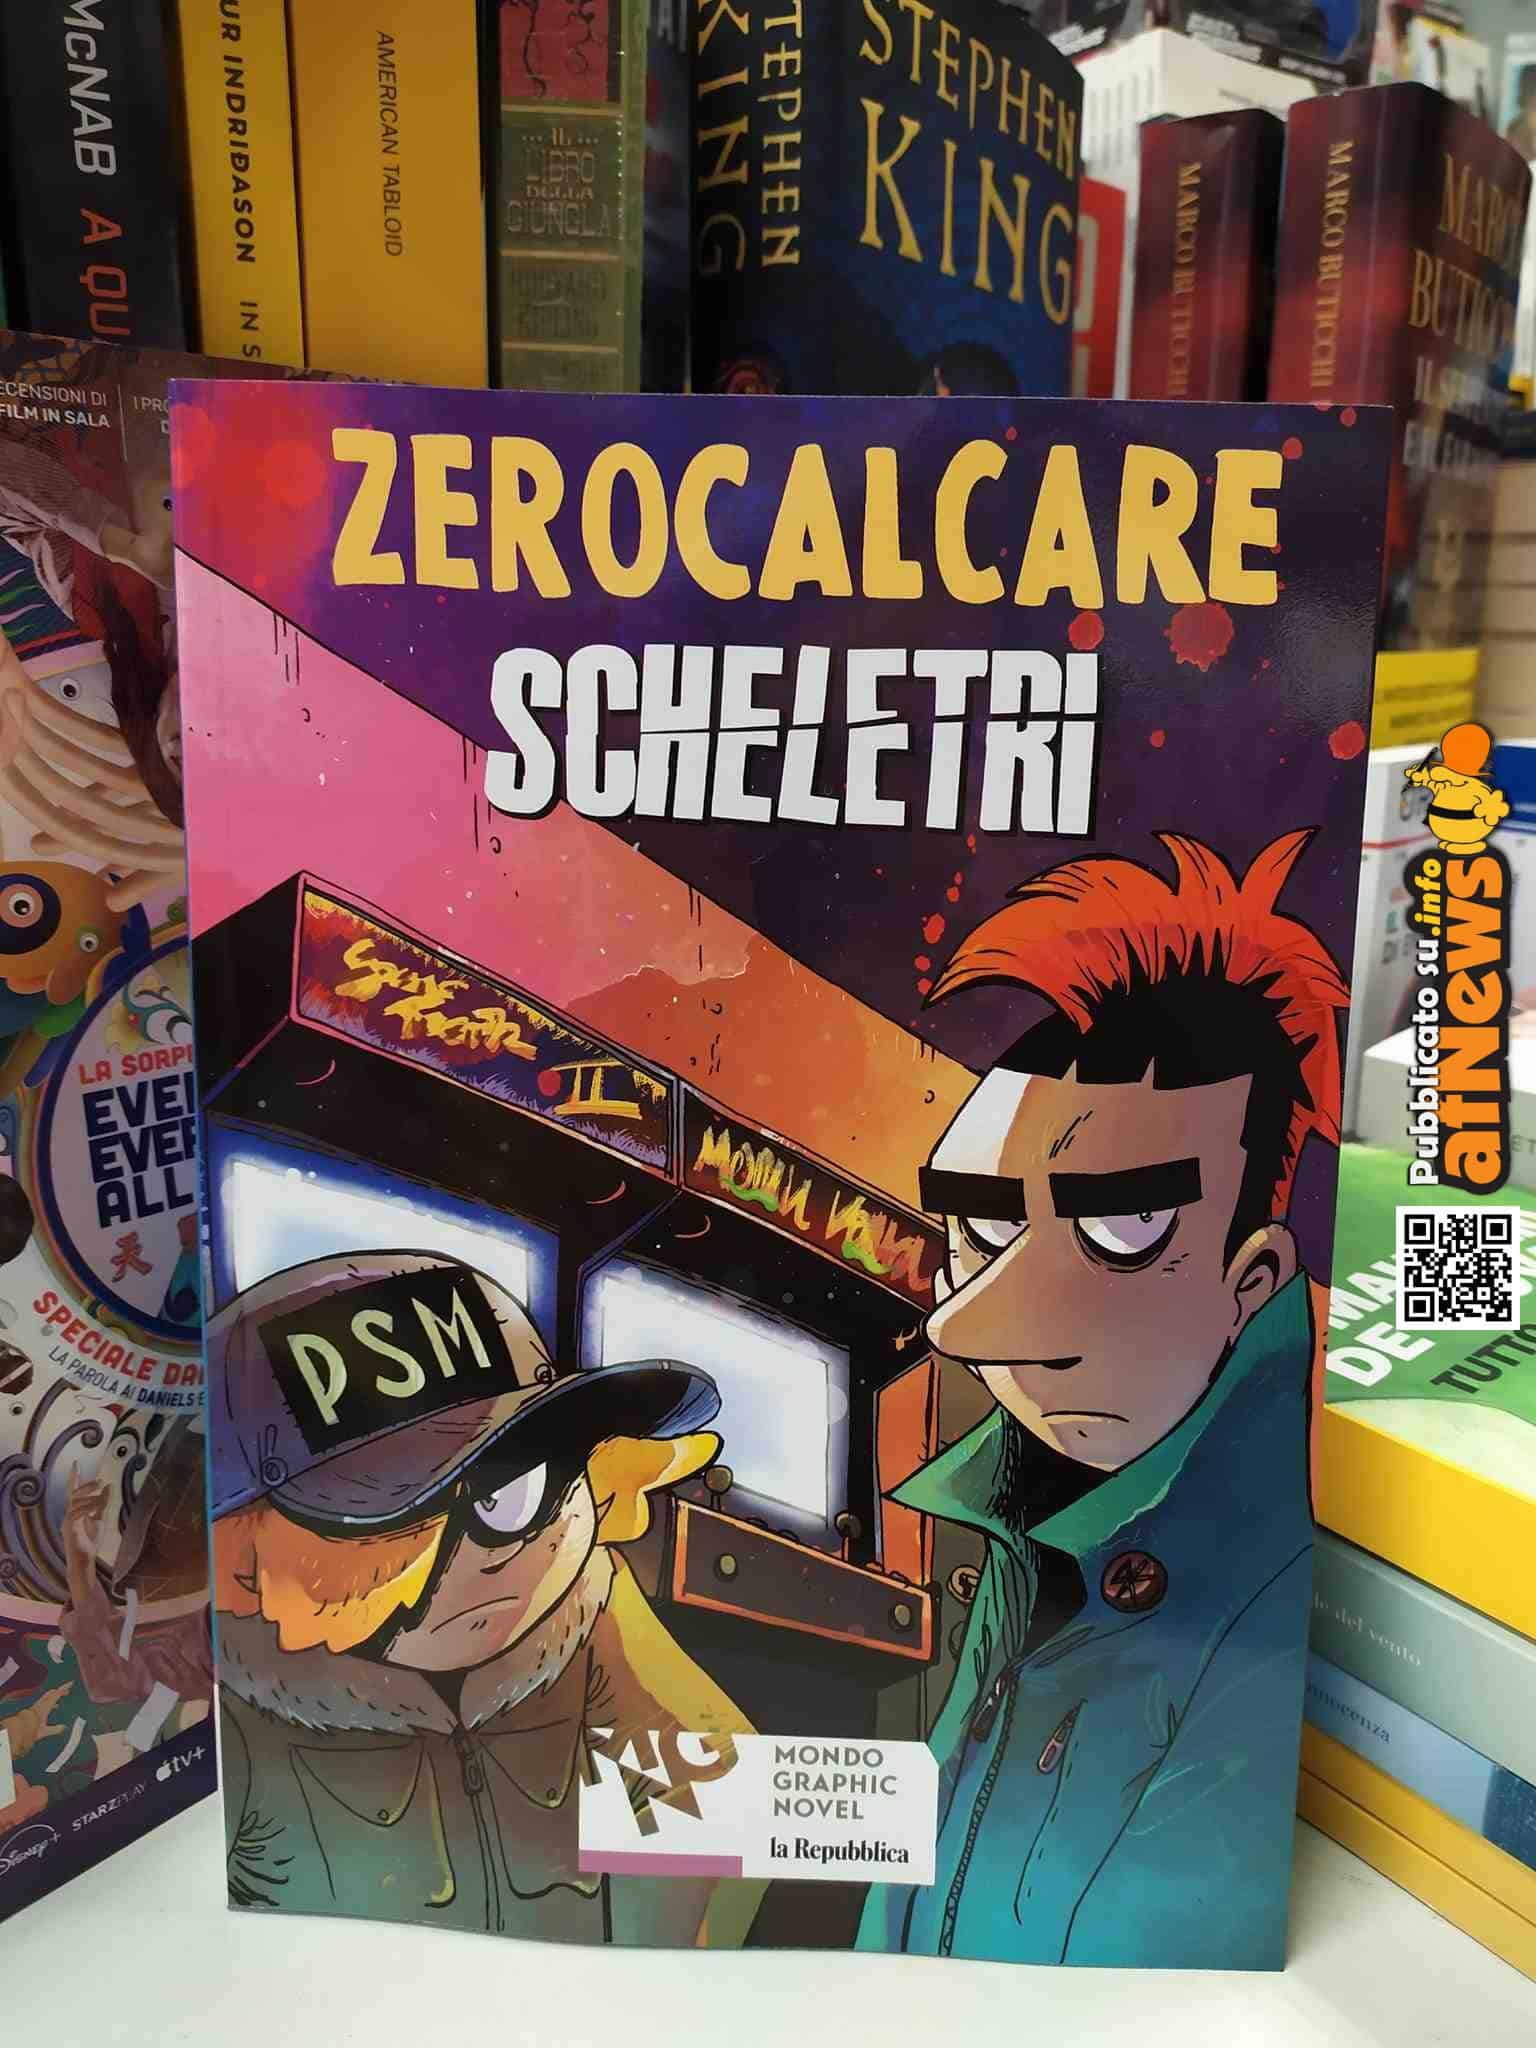 Mondo Graphic Novel la nuova collana di Repubblica esordisce in edicola con  “Scheletri” di Zerocalcare - afNews